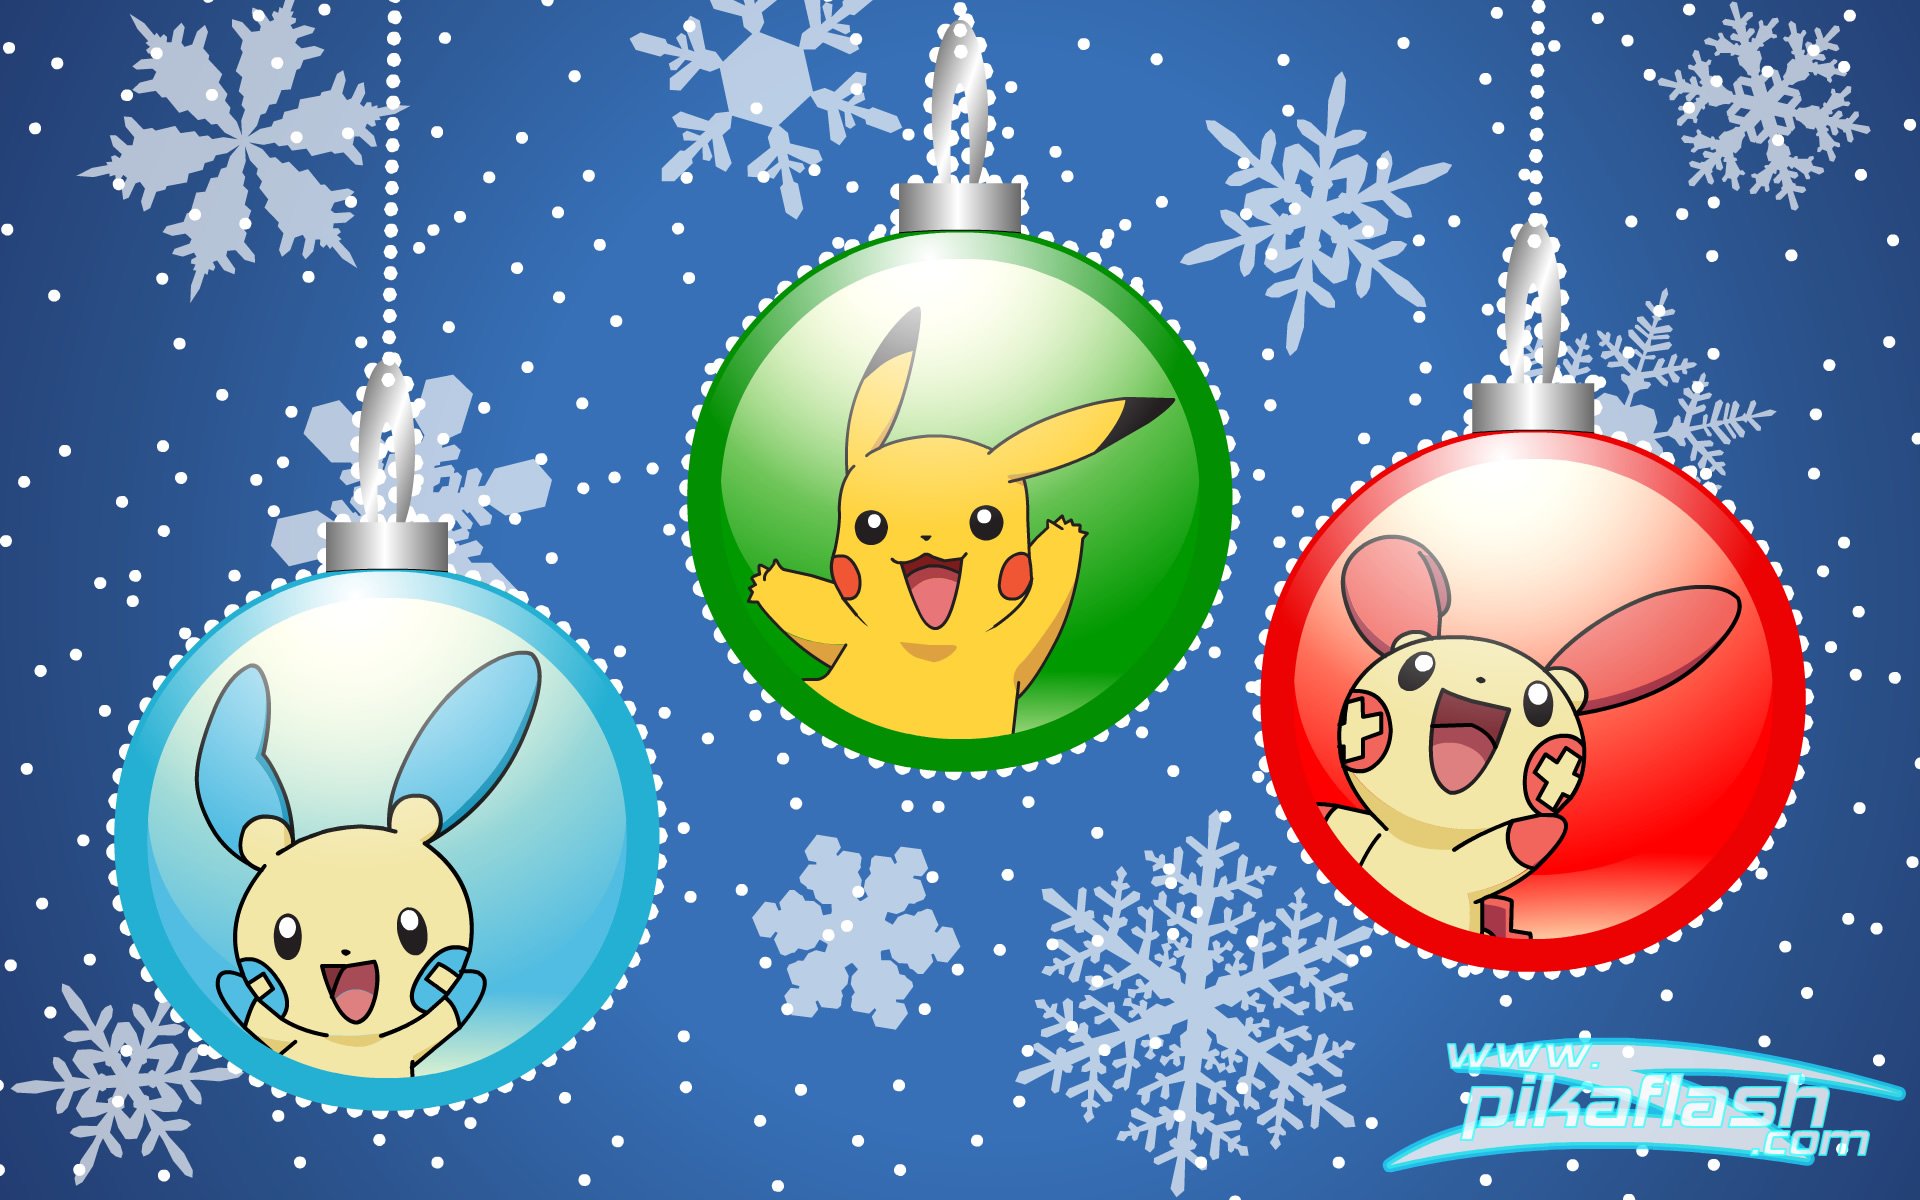 navidad anime wallpaper,christmas ornament,illustration,christmas eve,star